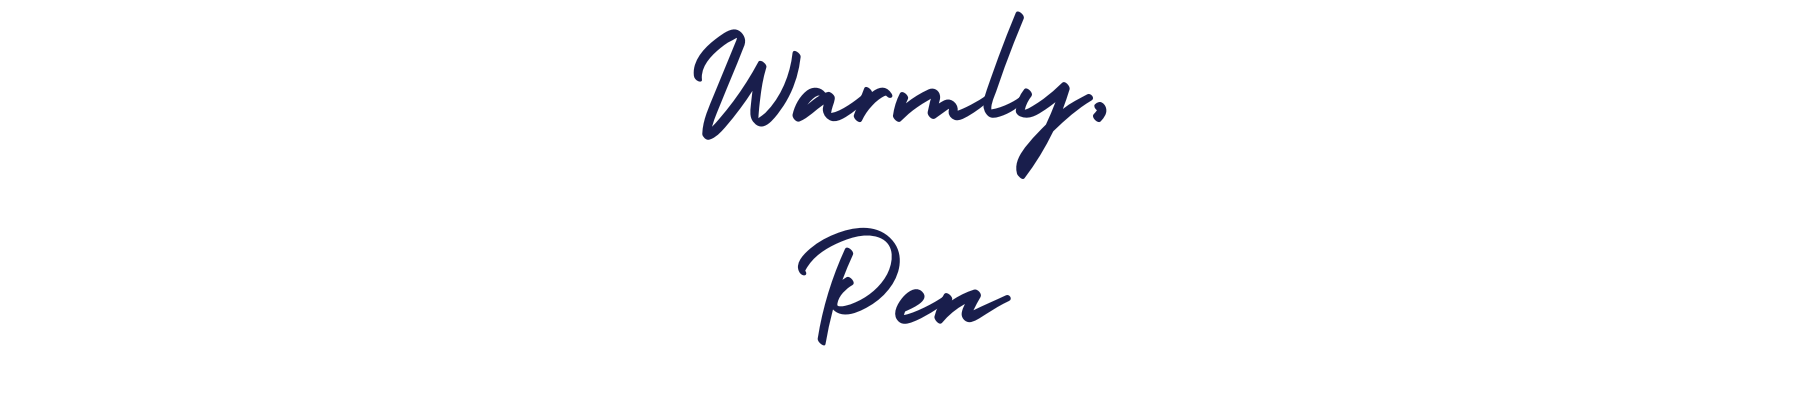 "Warmly, Penny" written in script.